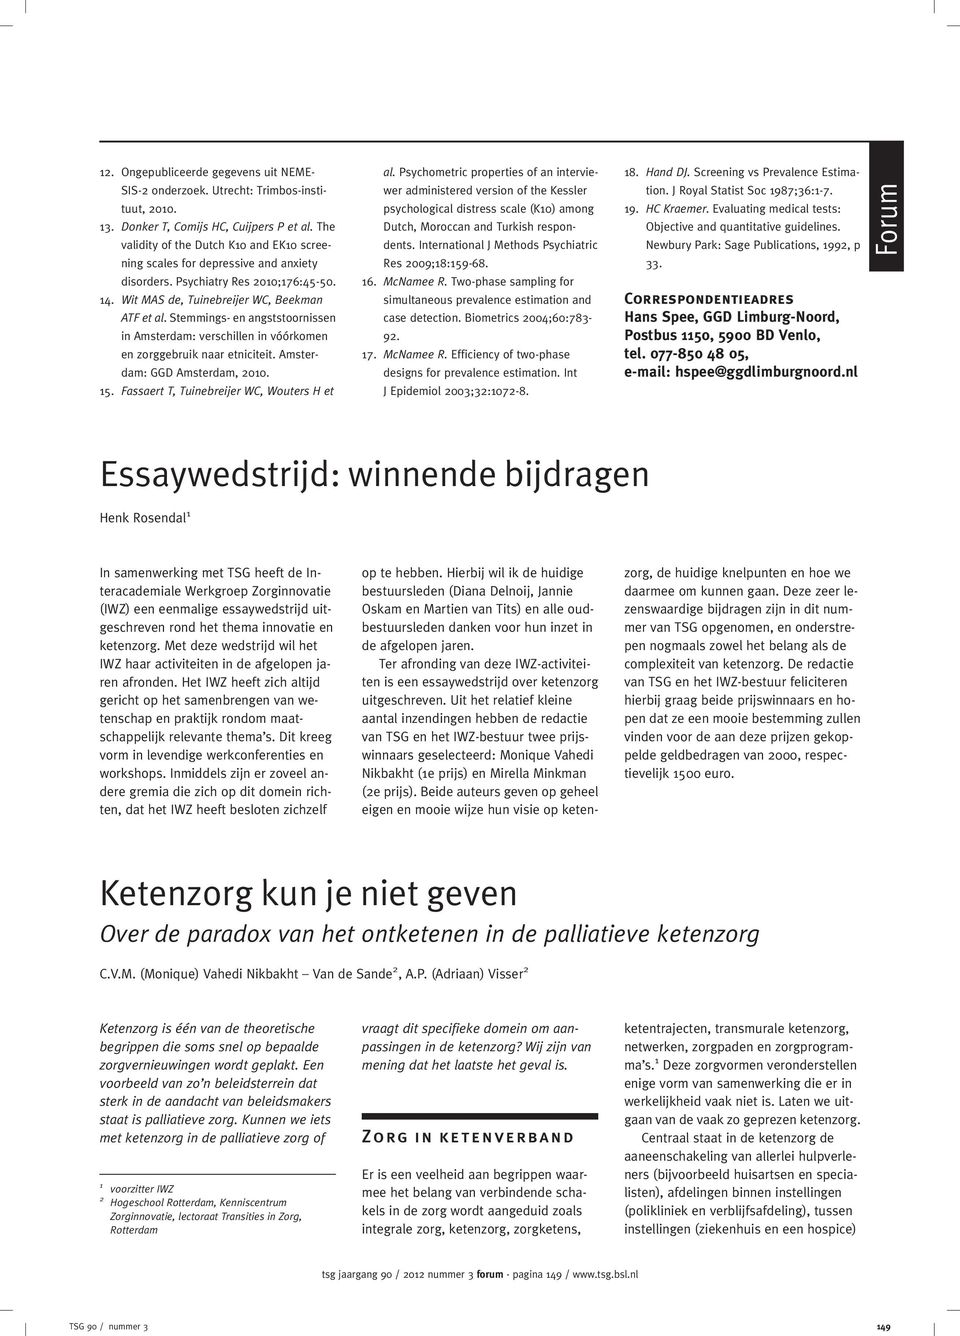 Stemmings- en angststoornissen in Amsterdam: verschillen in vóórkomen en zorggebruik naar etniciteit. Amsterdam: GGD Amsterdam, 2010. 15. Fassaert T, Tuinebreijer WC, Wouters H et al.